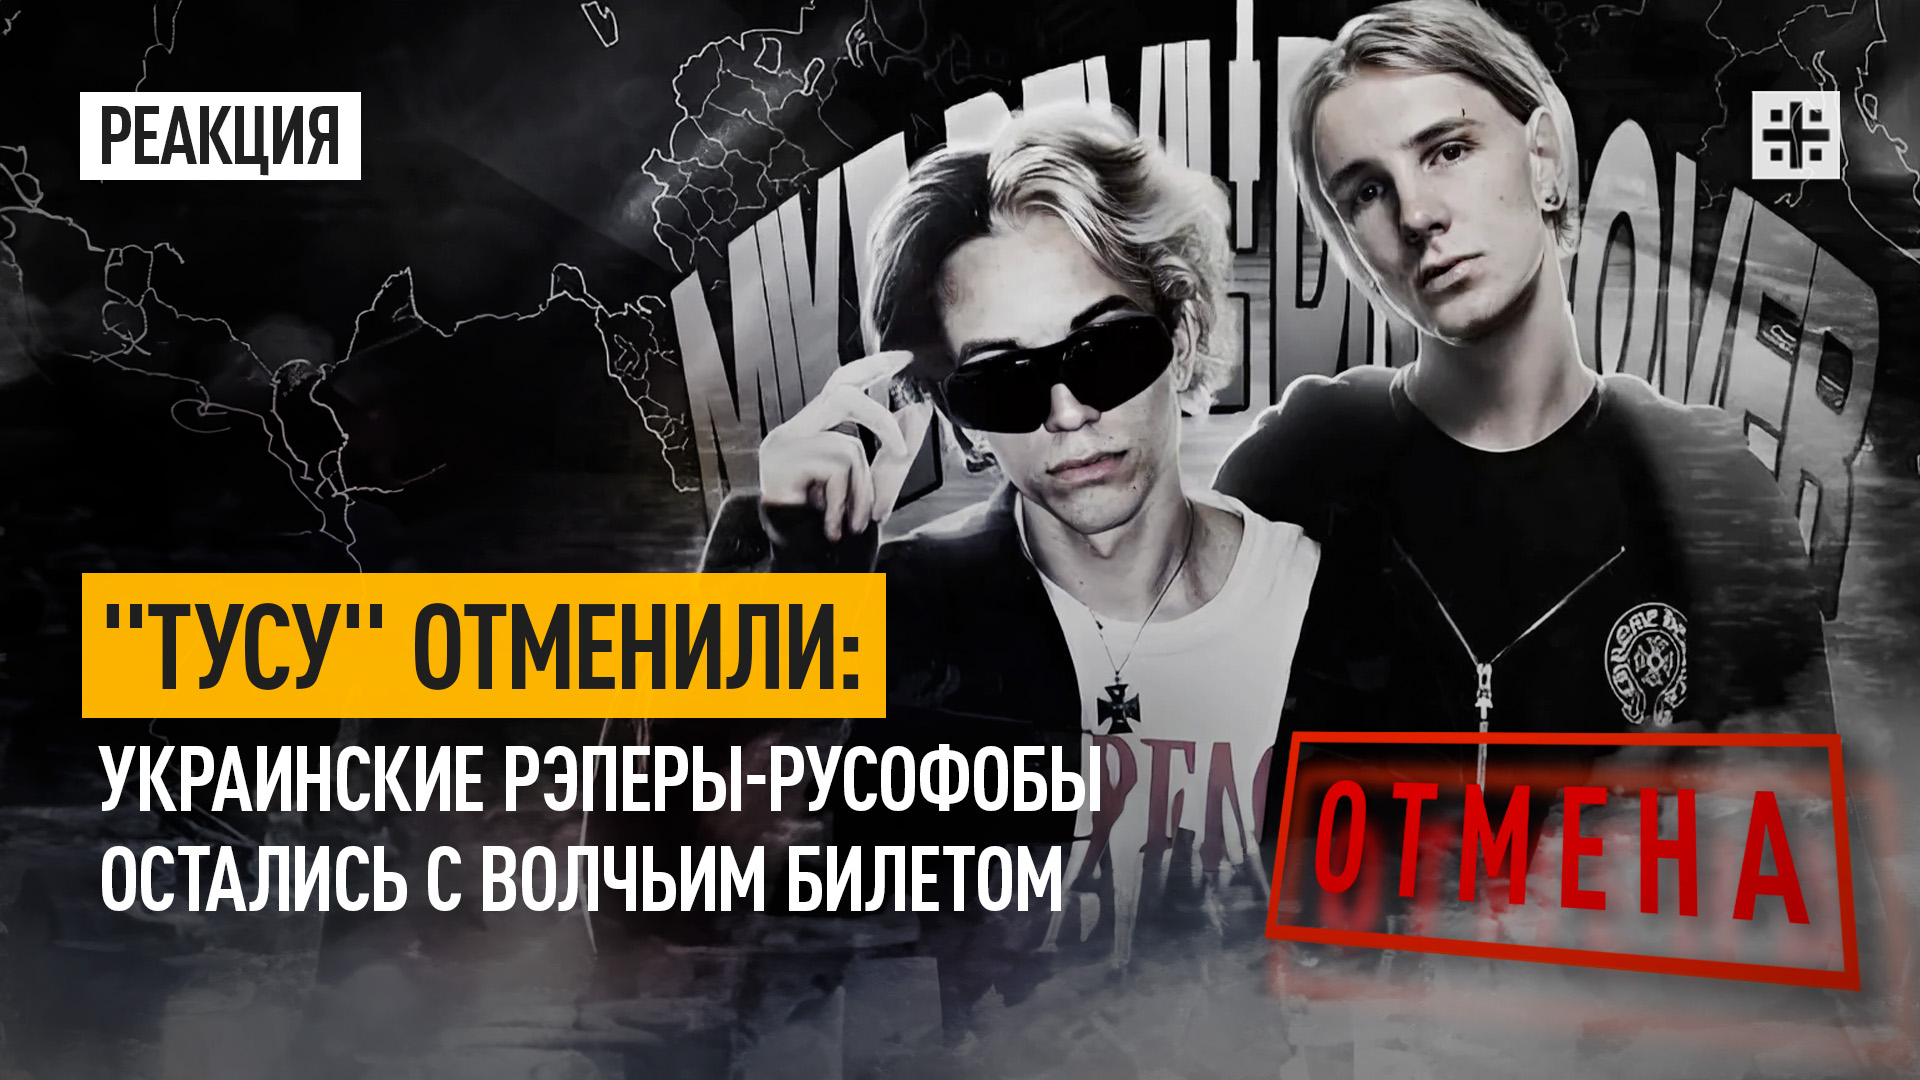 "Тусу" отменили: Украинские рэперы остались с волчьим билетом